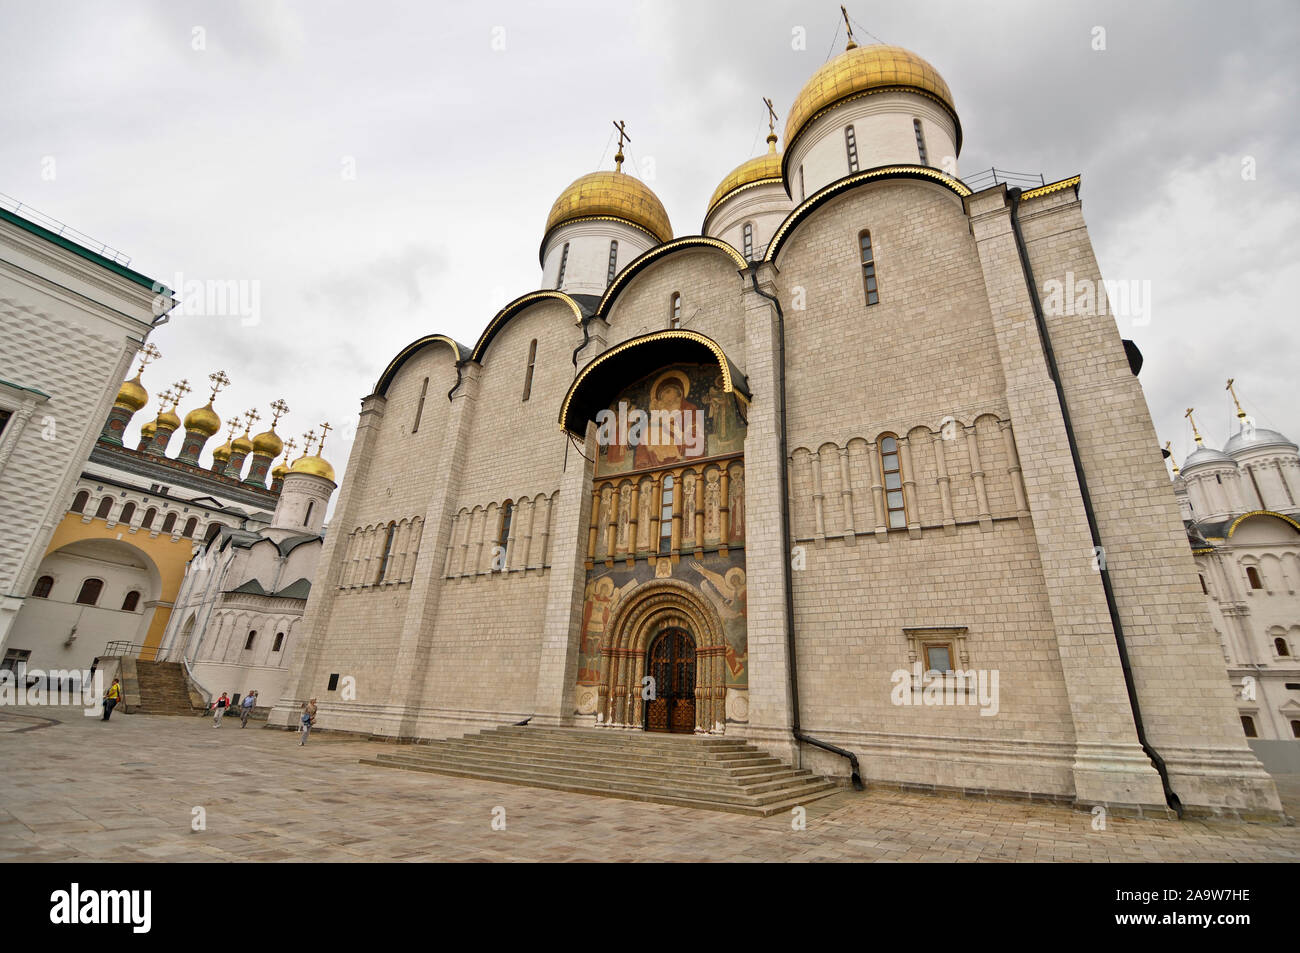 Place de la cathédrale : Cathédrale de la Dormition et de l'église de la Nativité, le Kremlin de Moscou, Russie Banque D'Images